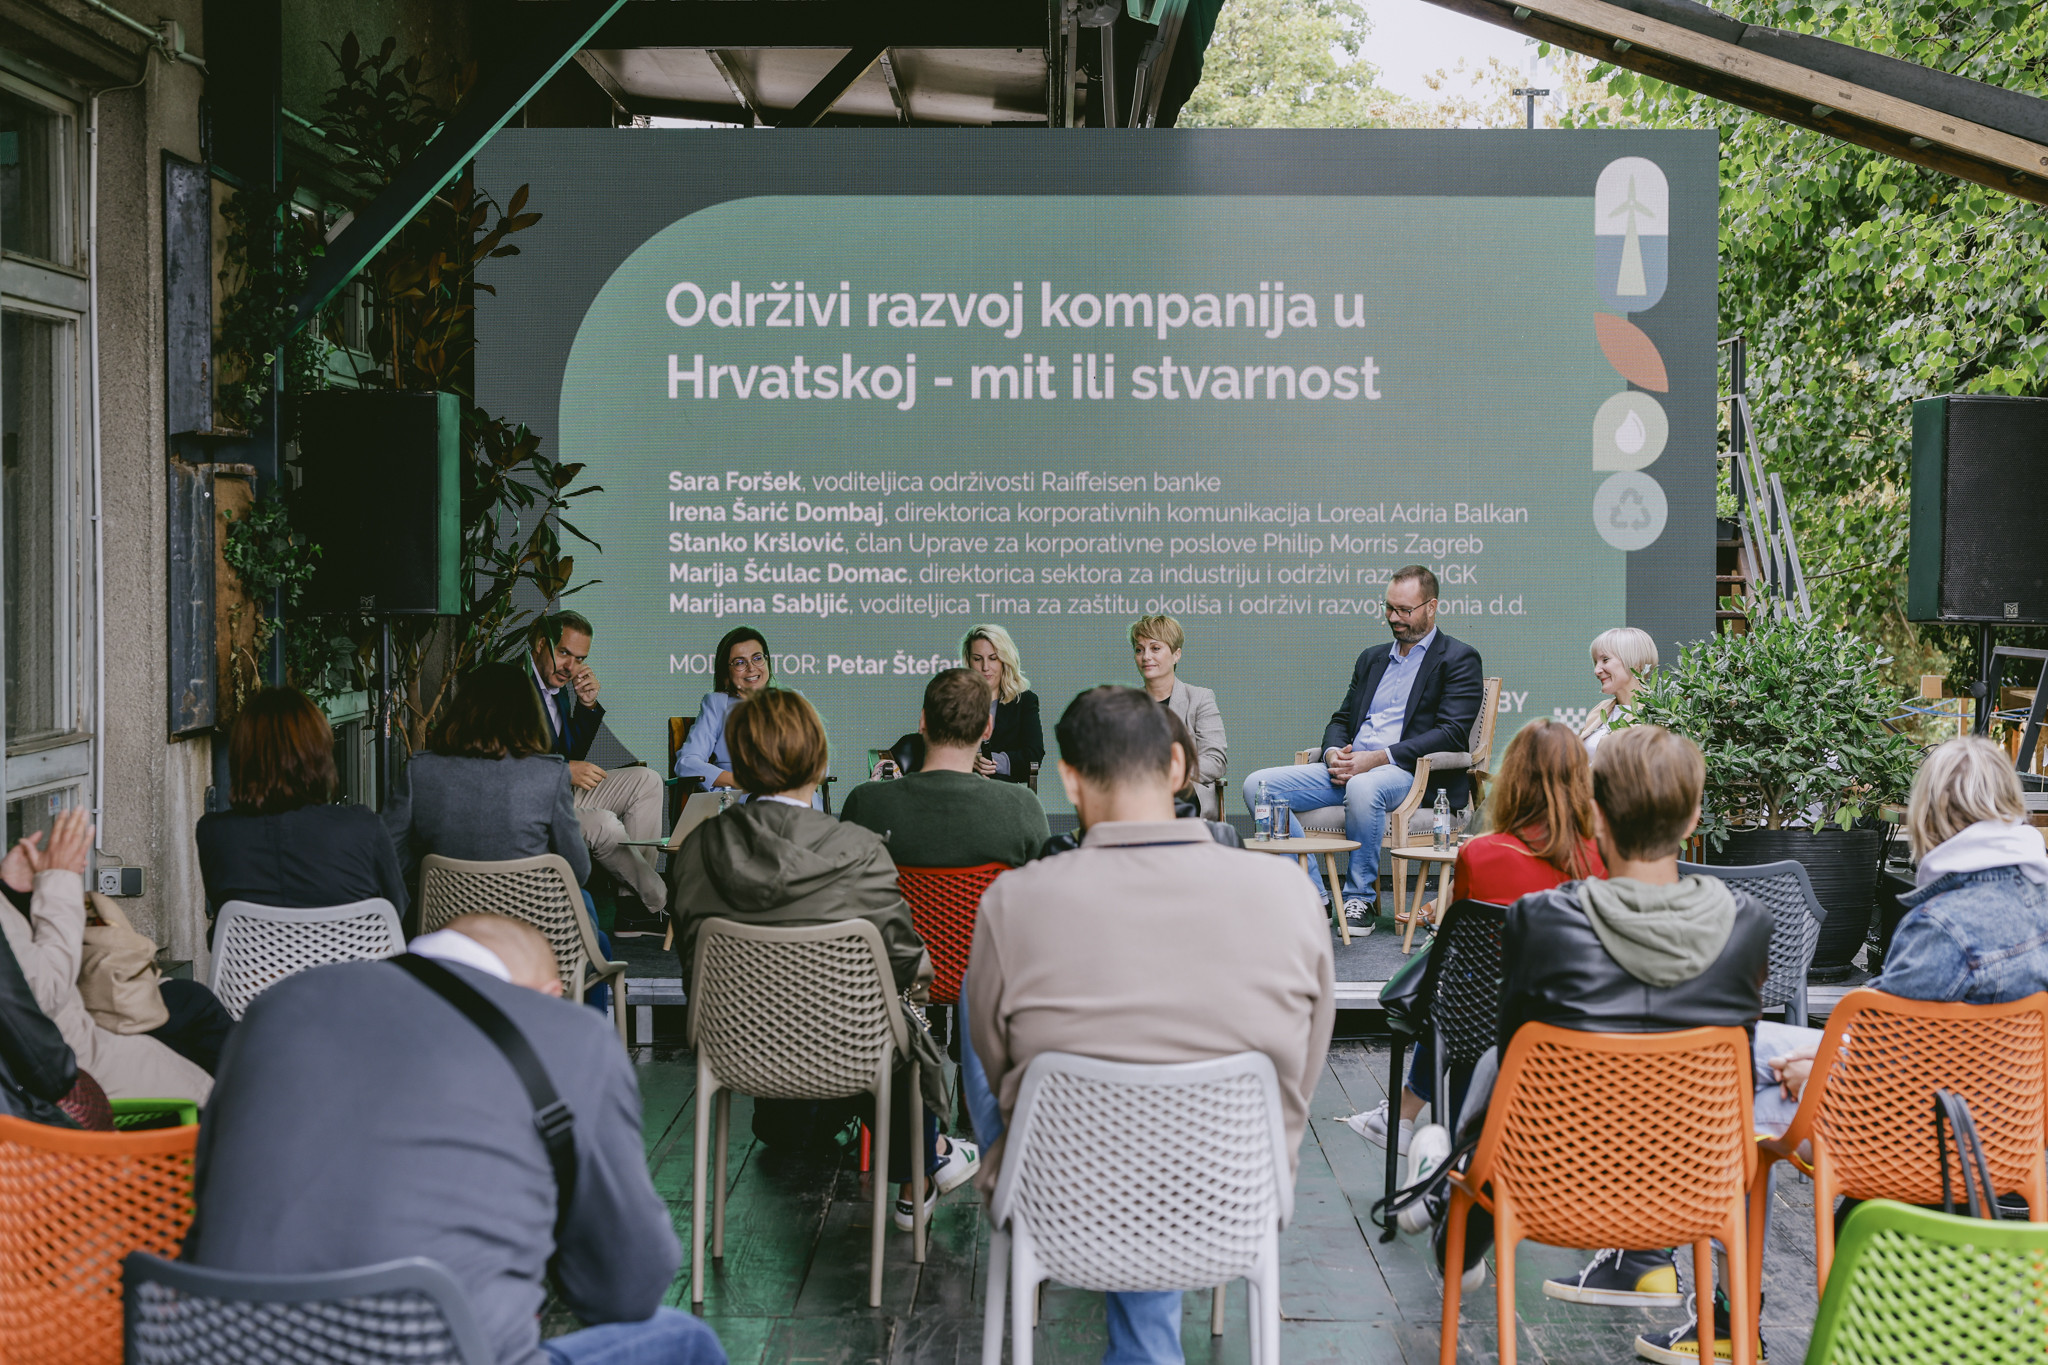 Panel Održivi razvoj kompanija u Hrvatskoj.jpg